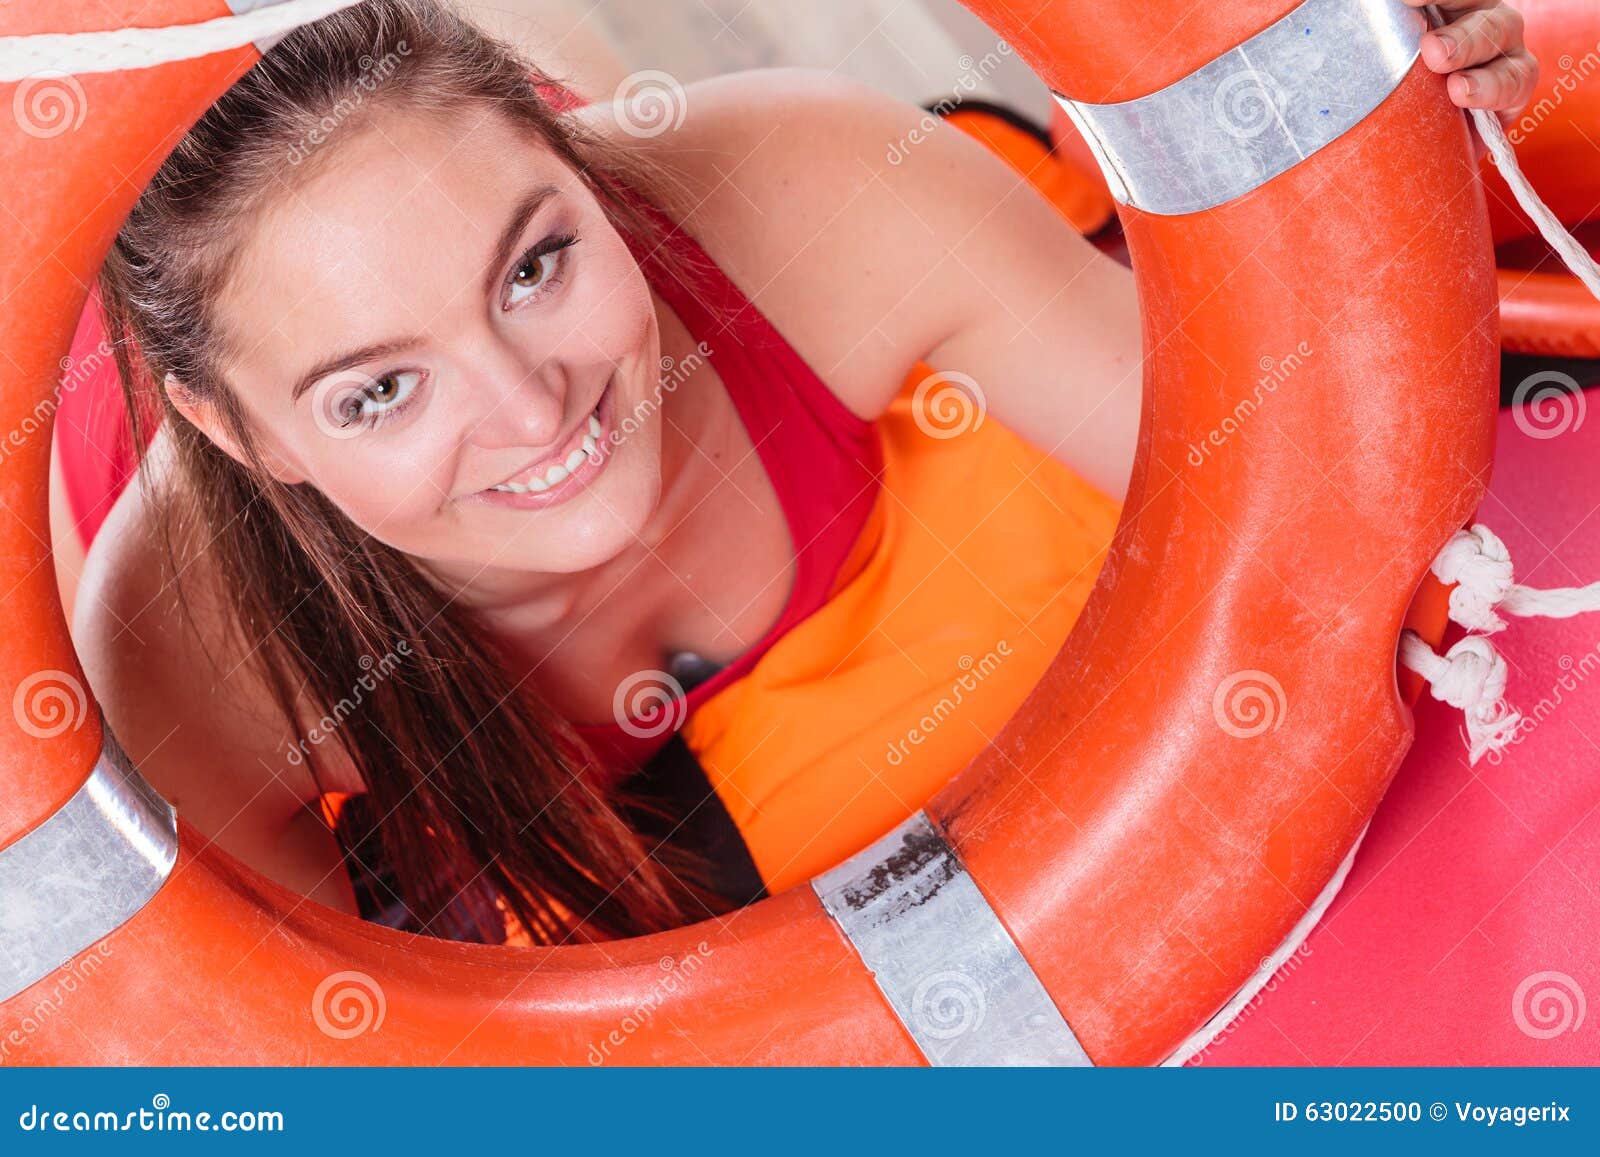 Девушка со спасательным кругом. Девушка в спасательном круге. Спасательный круг у женщин. Фотосессия со спасательным кругом.